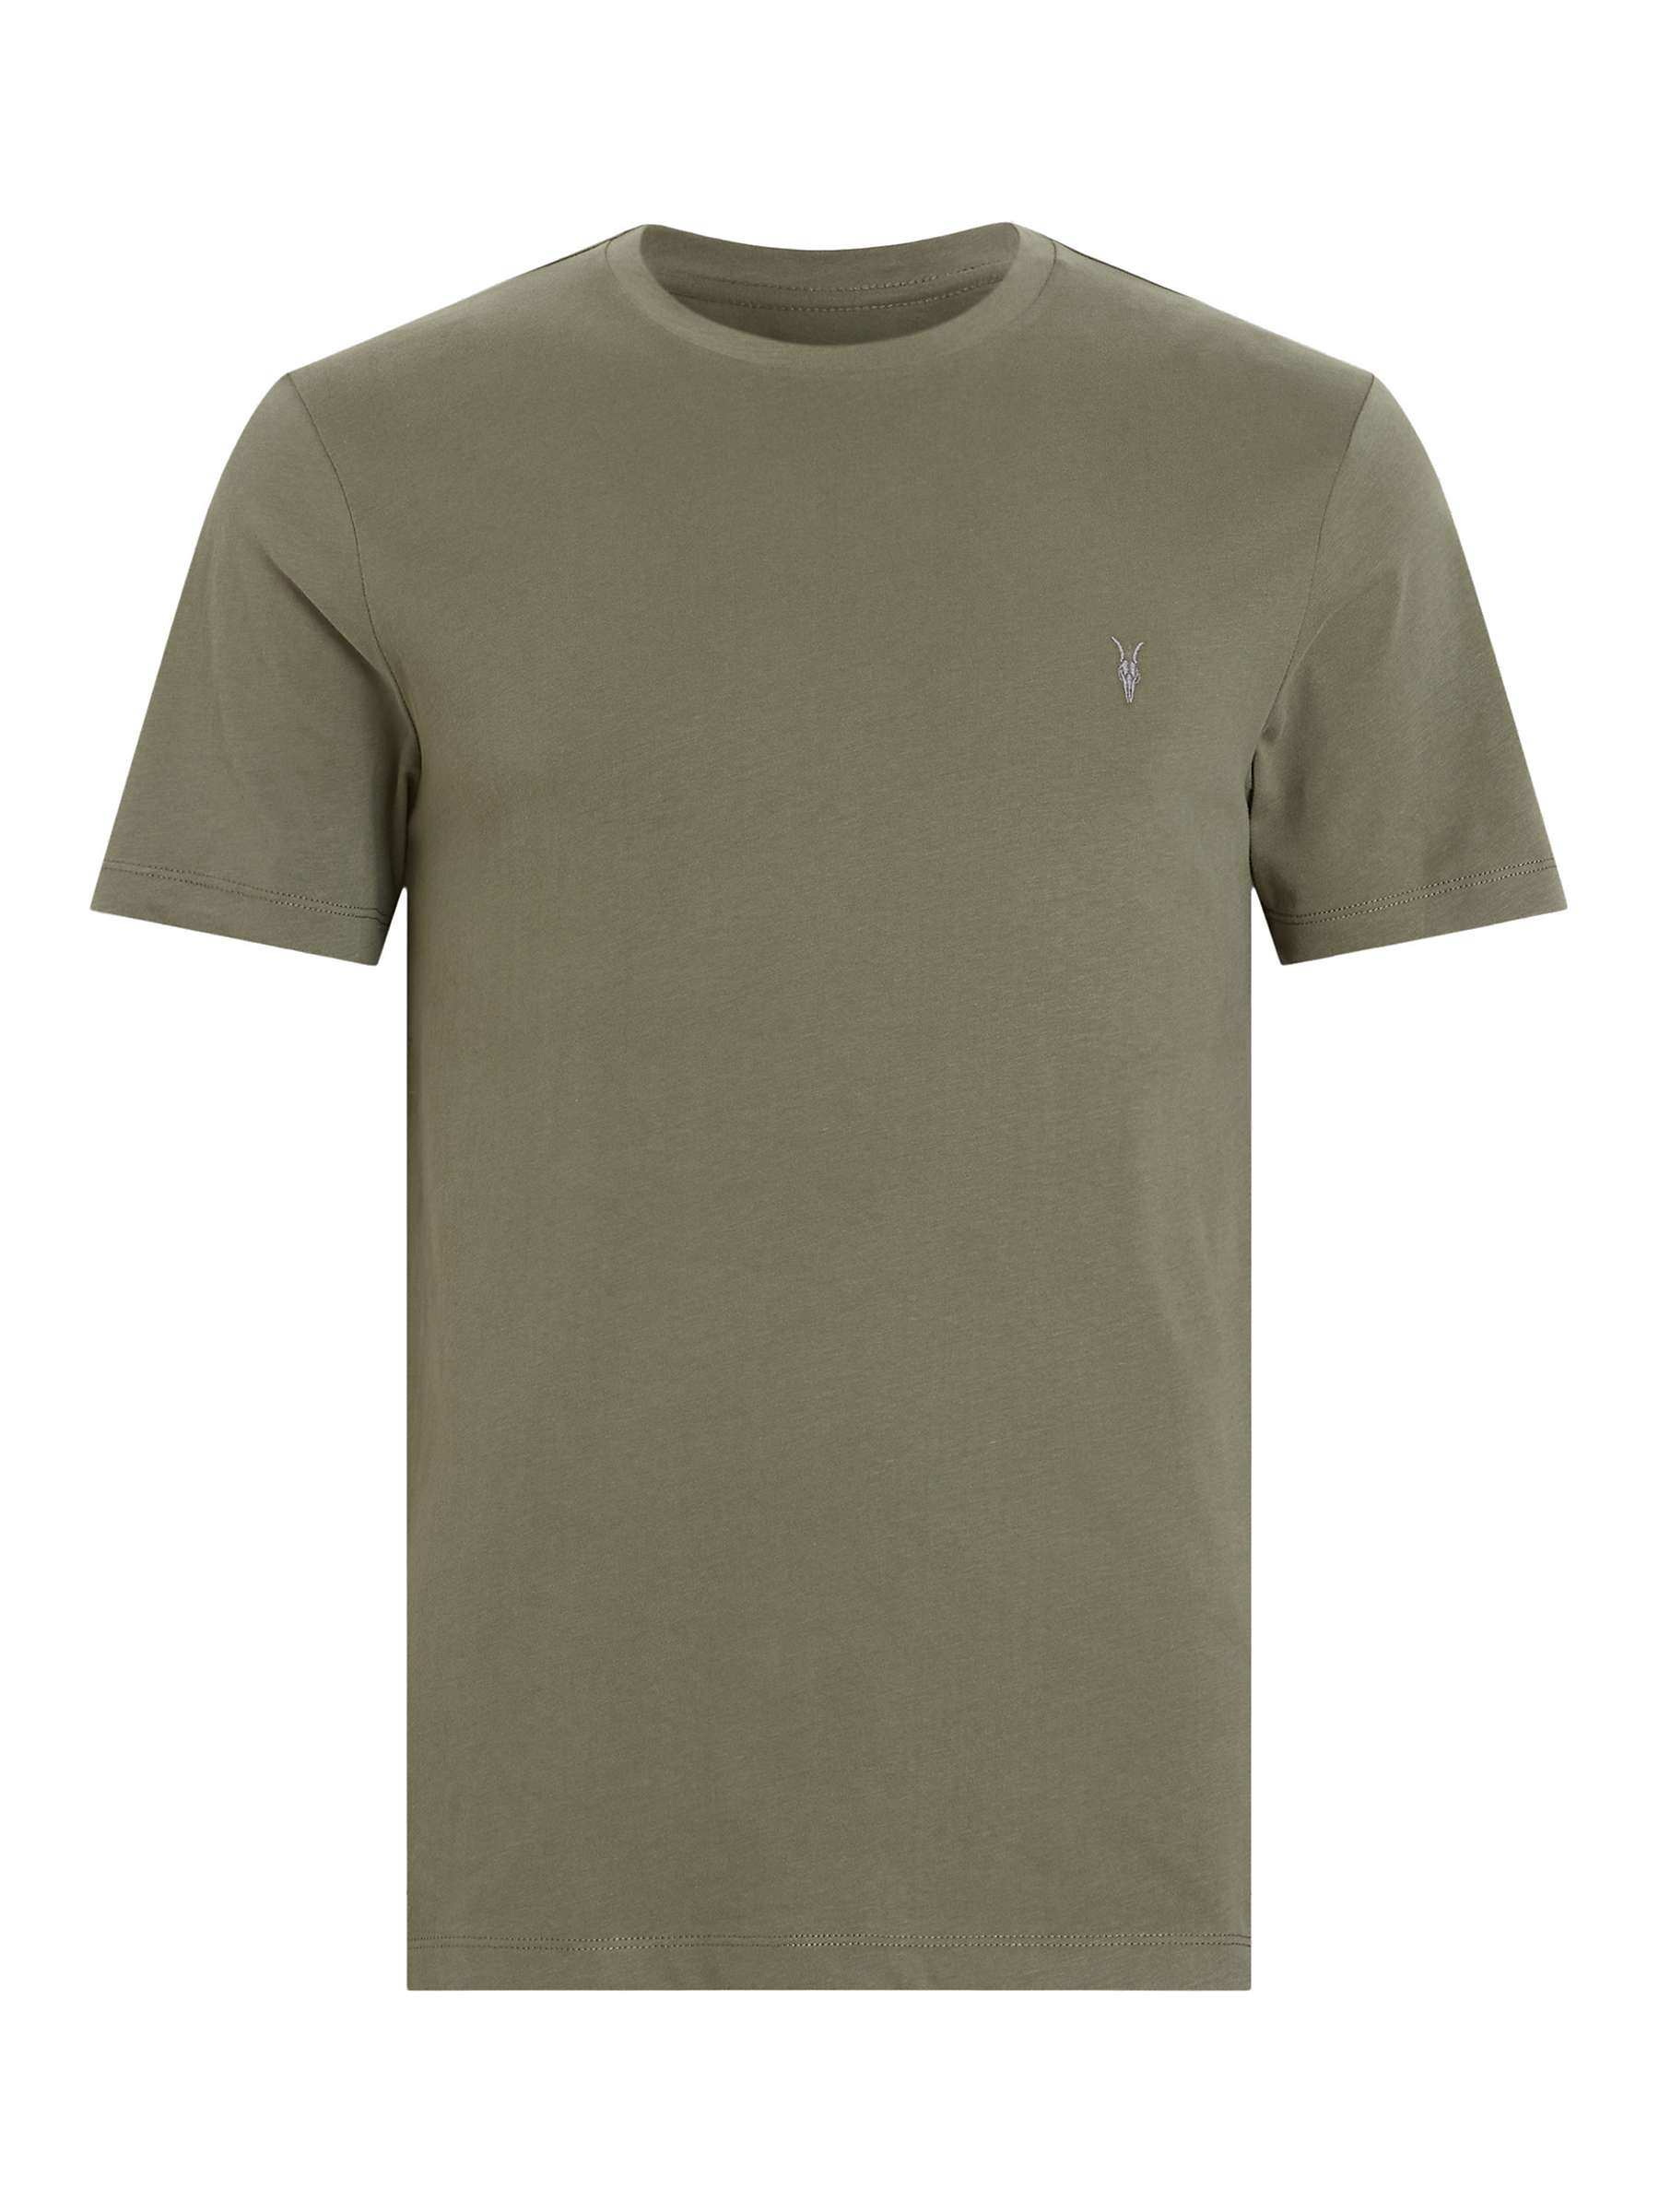 Buy AllSaints Brace Crew T-Shirt Online at johnlewis.com